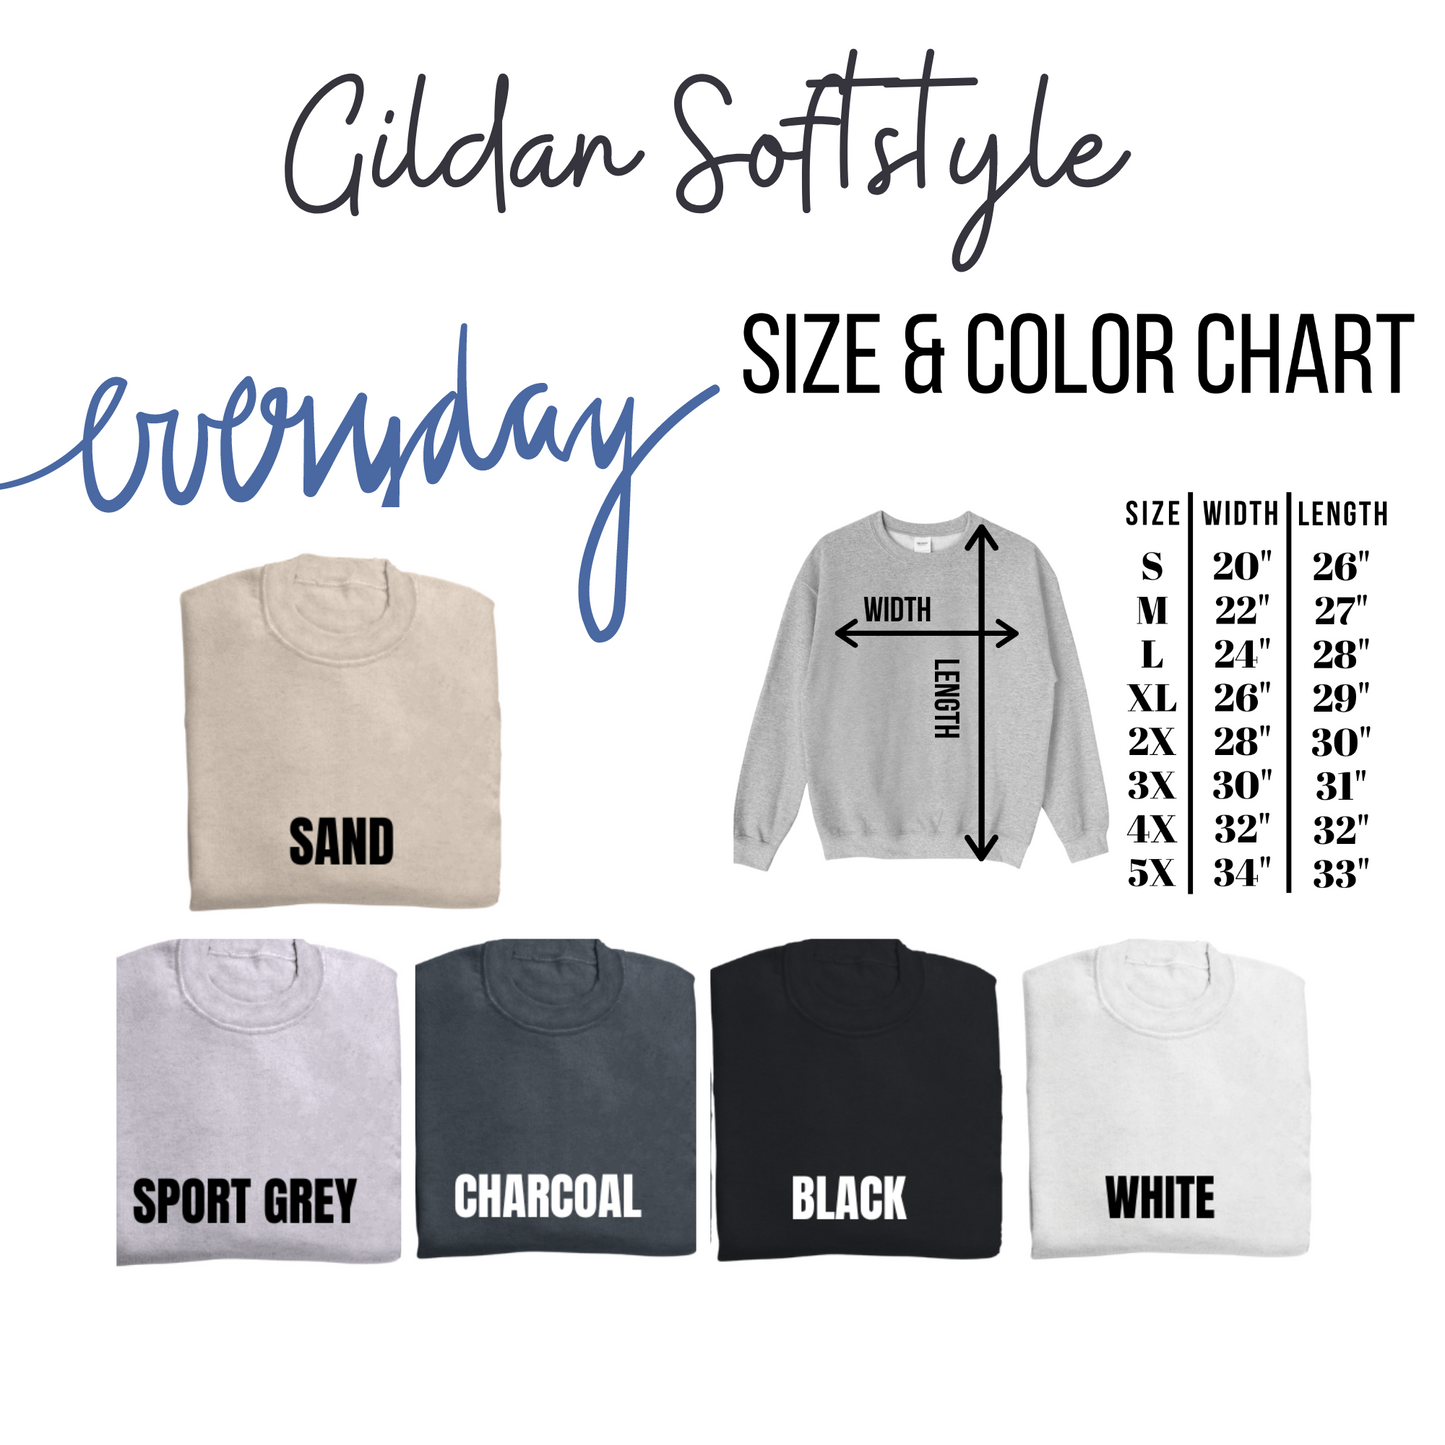 Lucky Sequin Effect Gildan Softstyle Tshirt or Sweatshirt